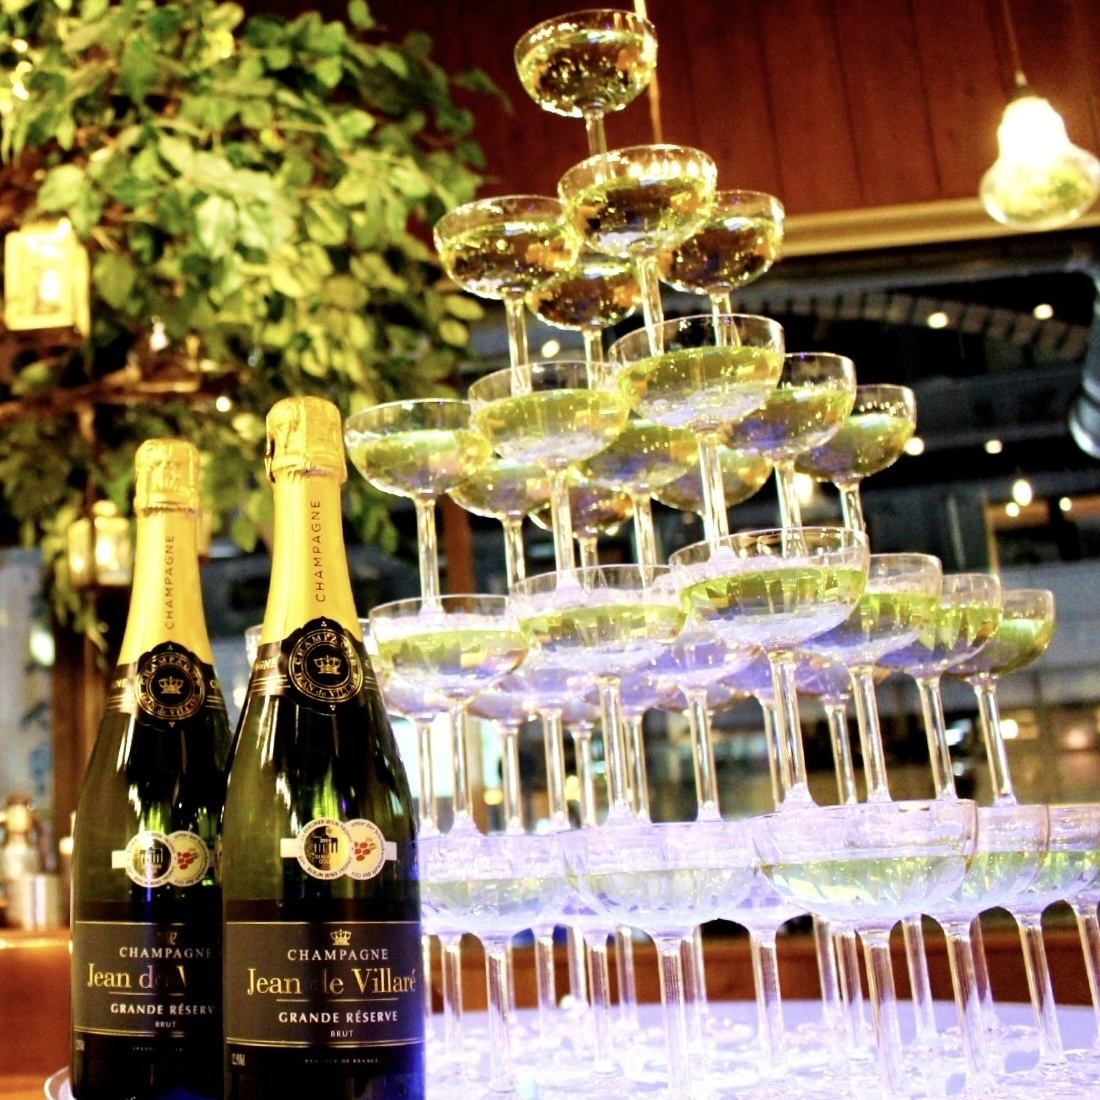 您甚至可以拥有一个香槟塔！还有很多其他选择可以让您的私人聚会活跃起来！在涩谷享受您的夜晚！